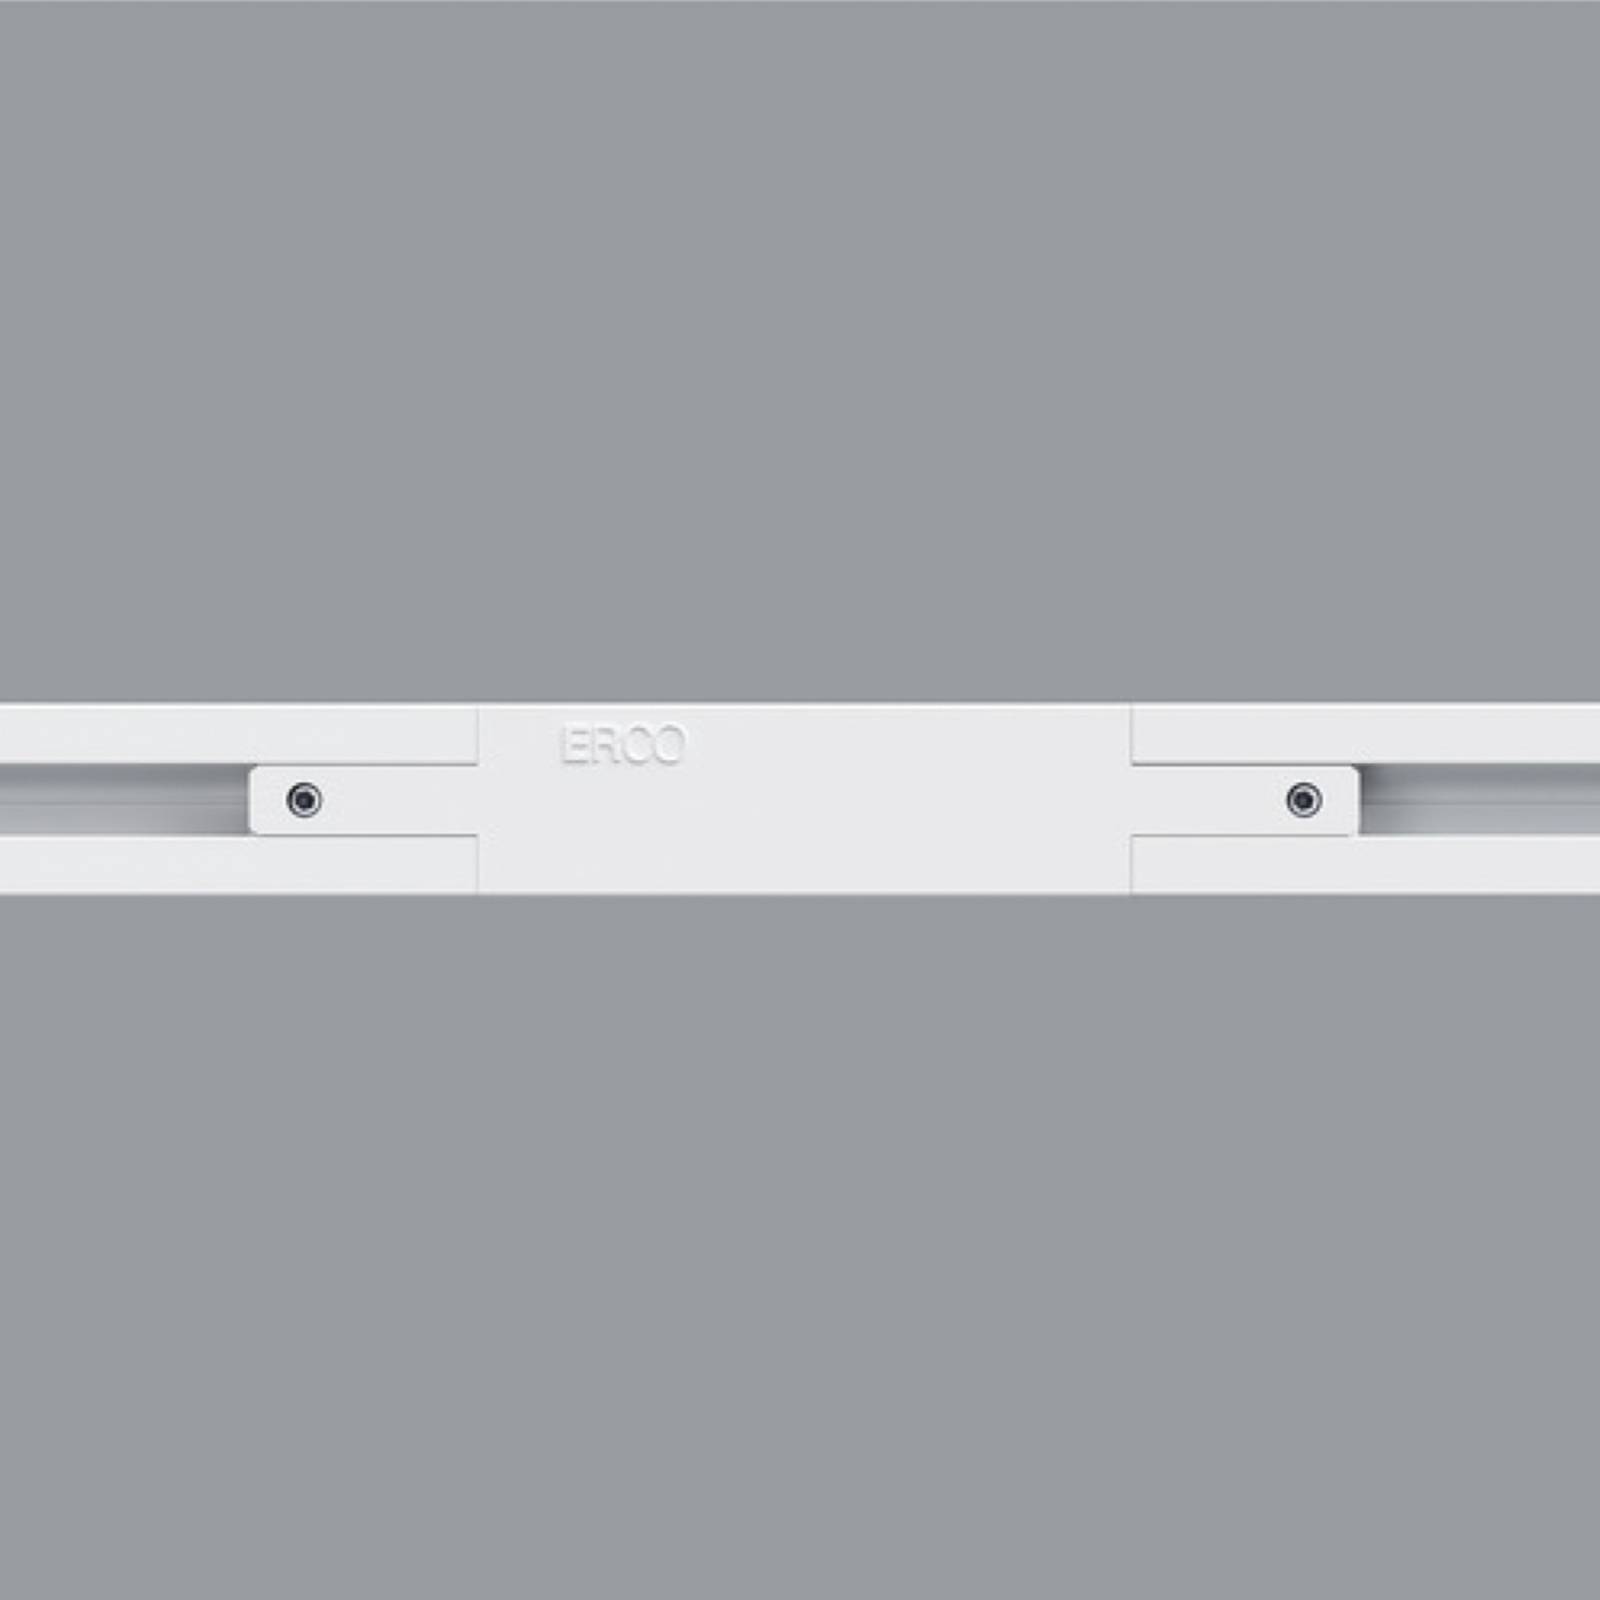 E-shop ERCO pozdĺžna spojka pre Minirail koľajnicu, biela